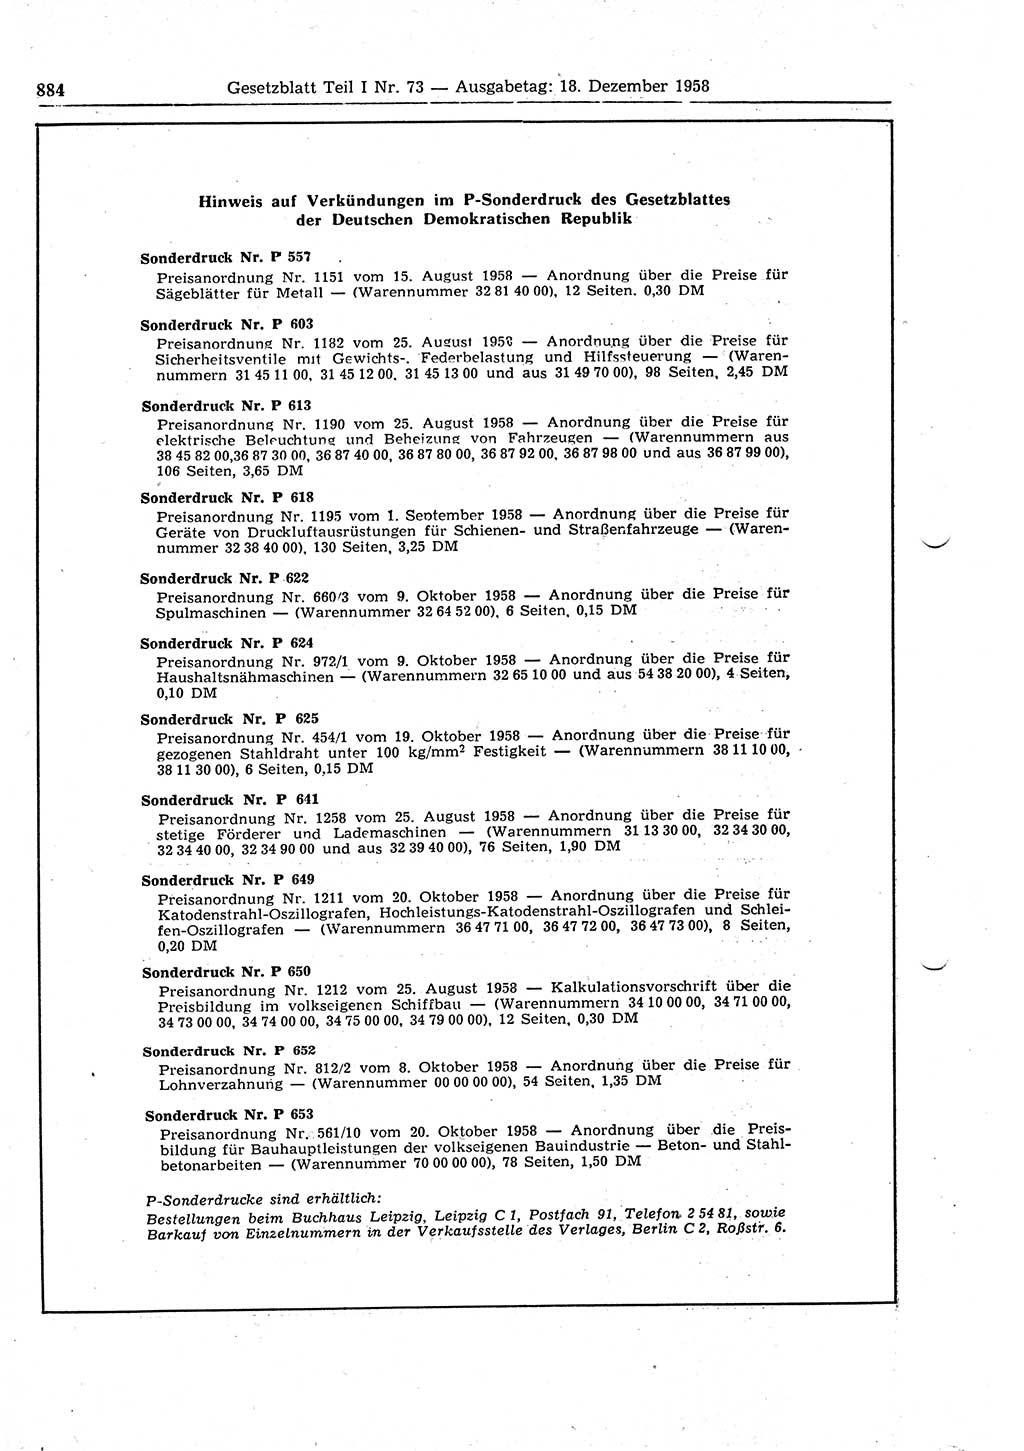 Gesetzblatt (GBl.) der Deutschen Demokratischen Republik (DDR) Teil Ⅰ 1958, Seite 884 (GBl. DDR Ⅰ 1958, S. 884)